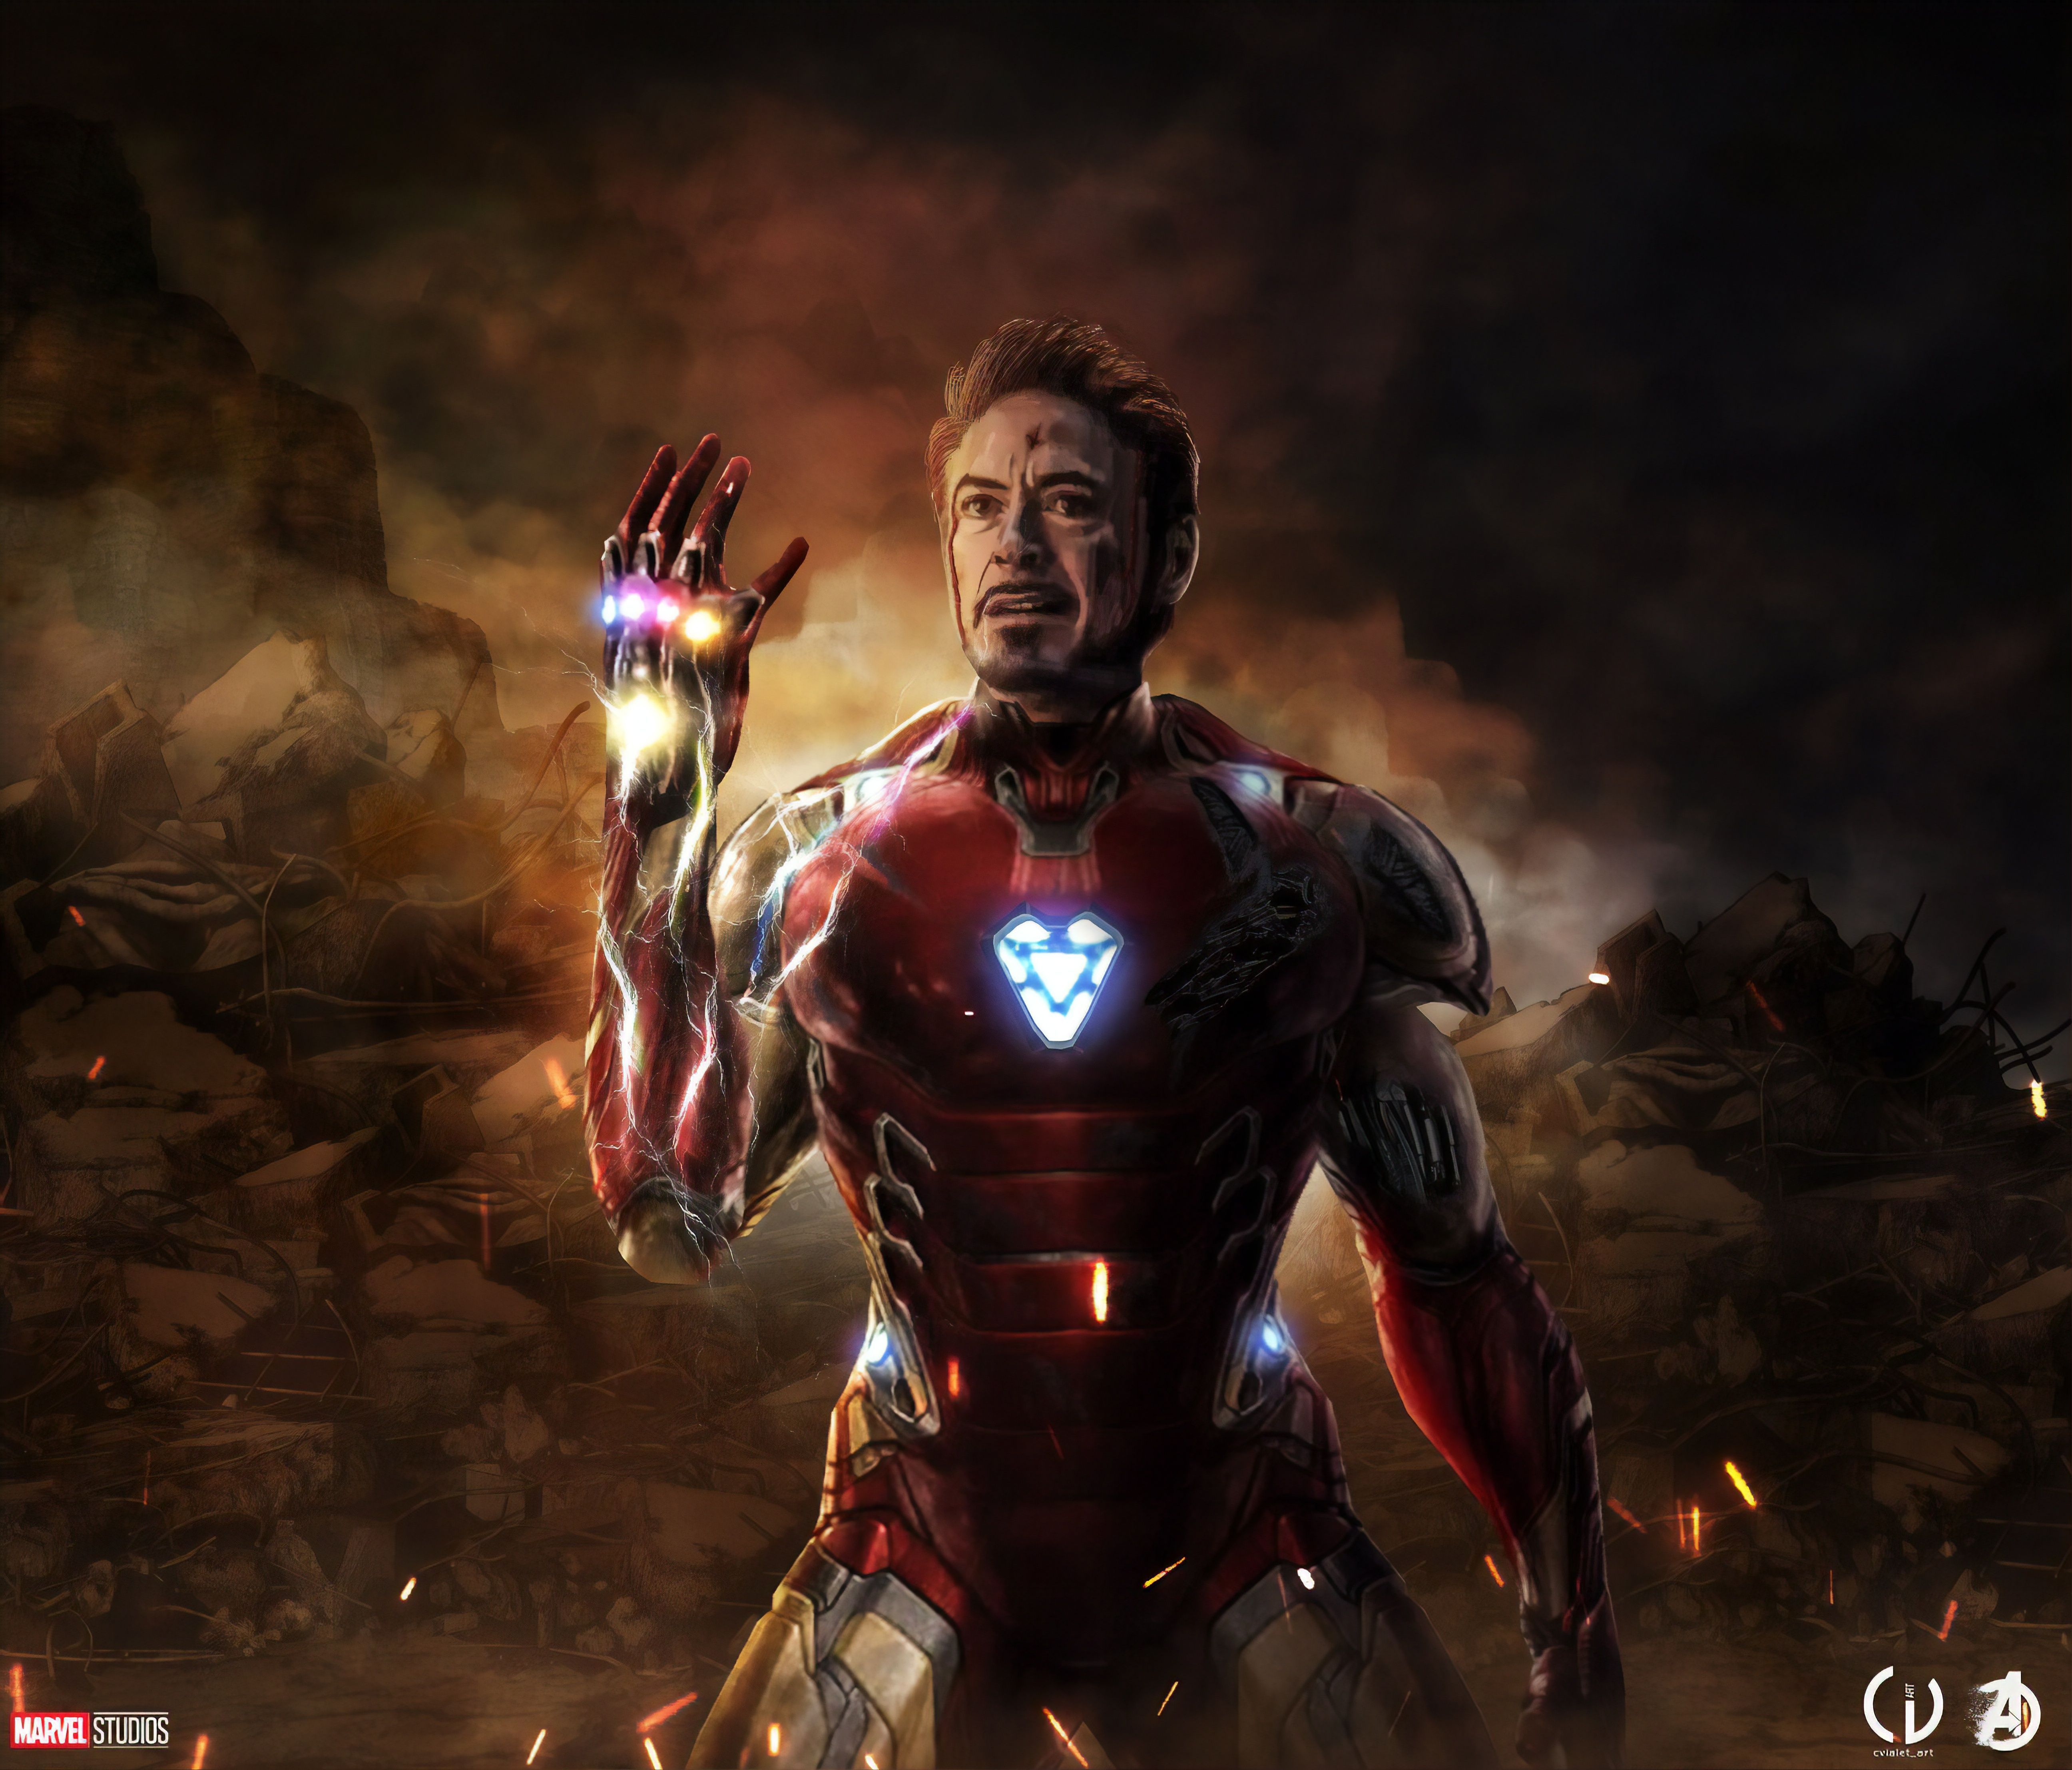 Iron Man Wallpaper 4k For Pc Endgame. Iron man wallpaper, Iron man avengers, Iron man HD image